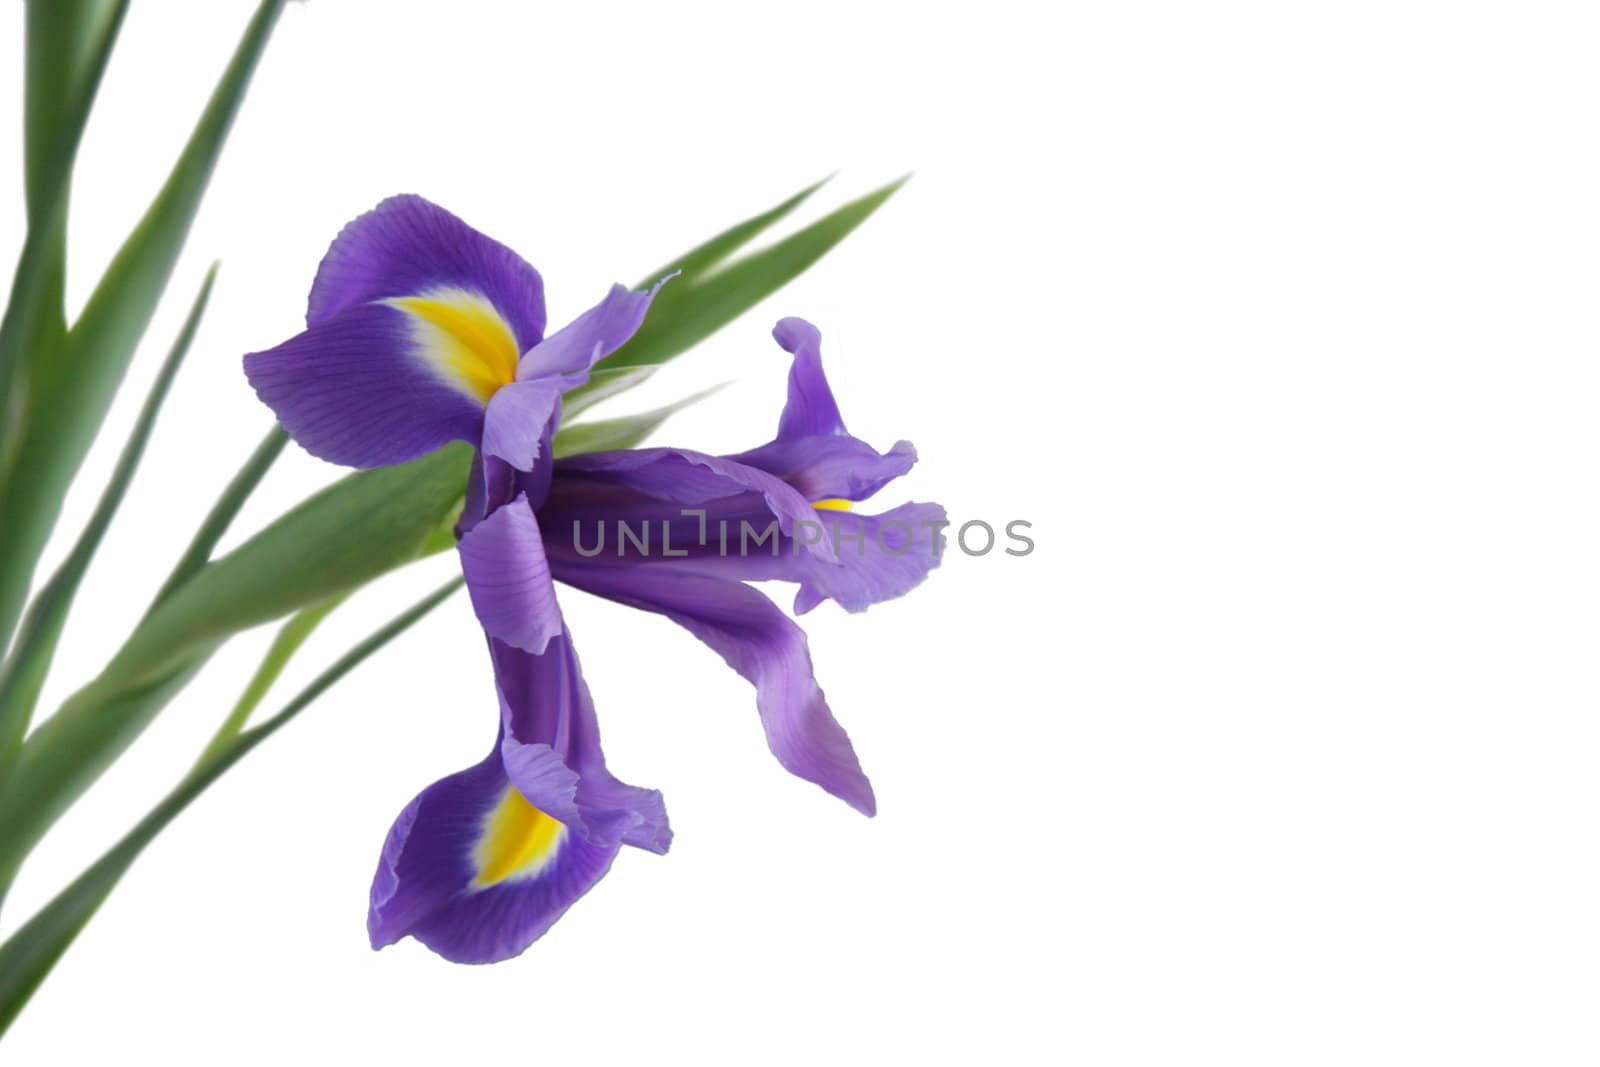 Violet Iris by snowturtle